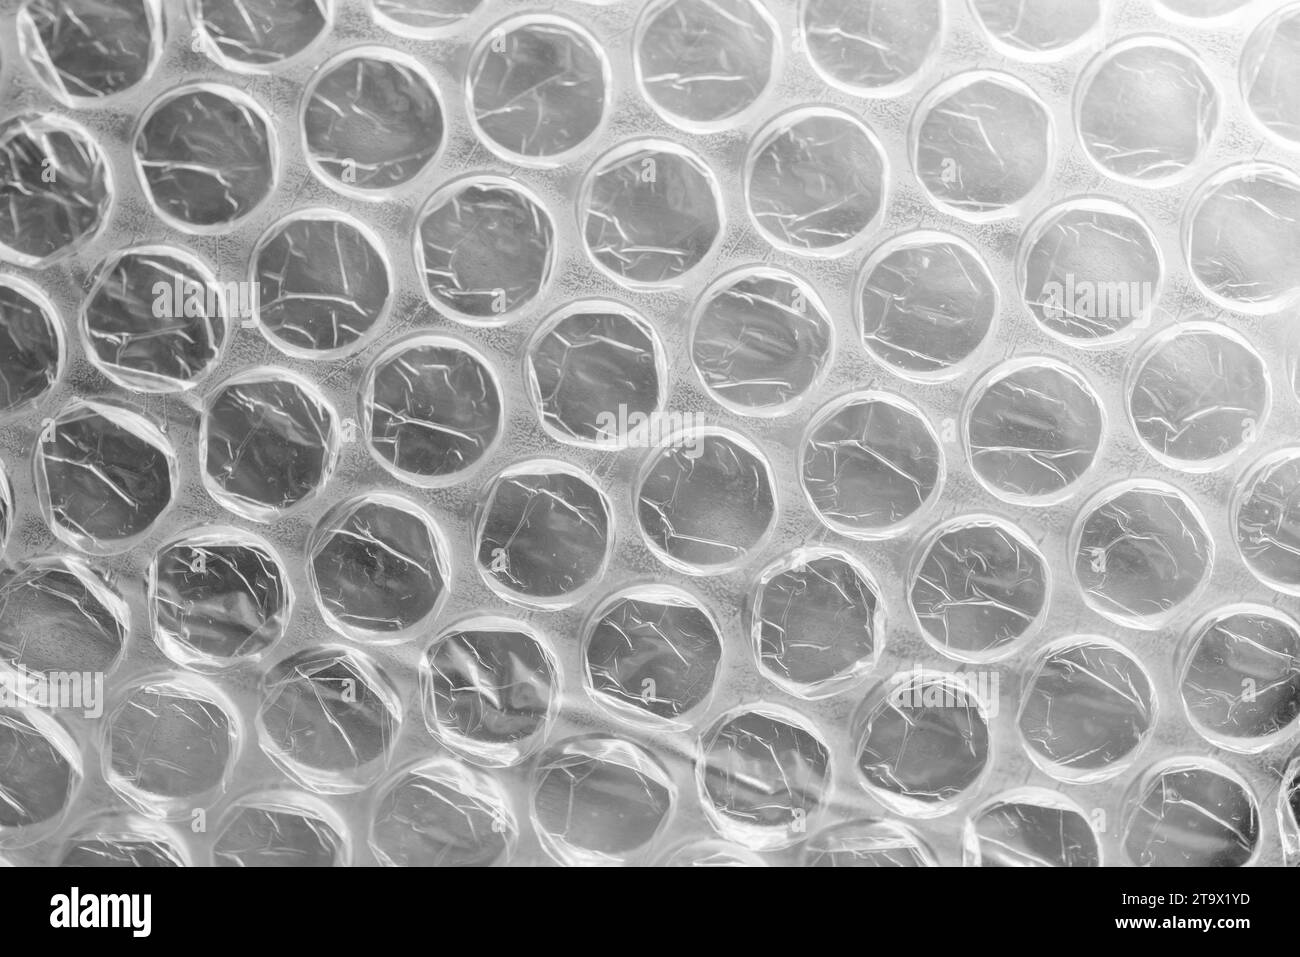 Film à bulles, photo de fond en gros plan. C'est une matière plastique transparente pliable avec des bulles d'air utilisé pour emballer des articles fragiles Banque D'Images